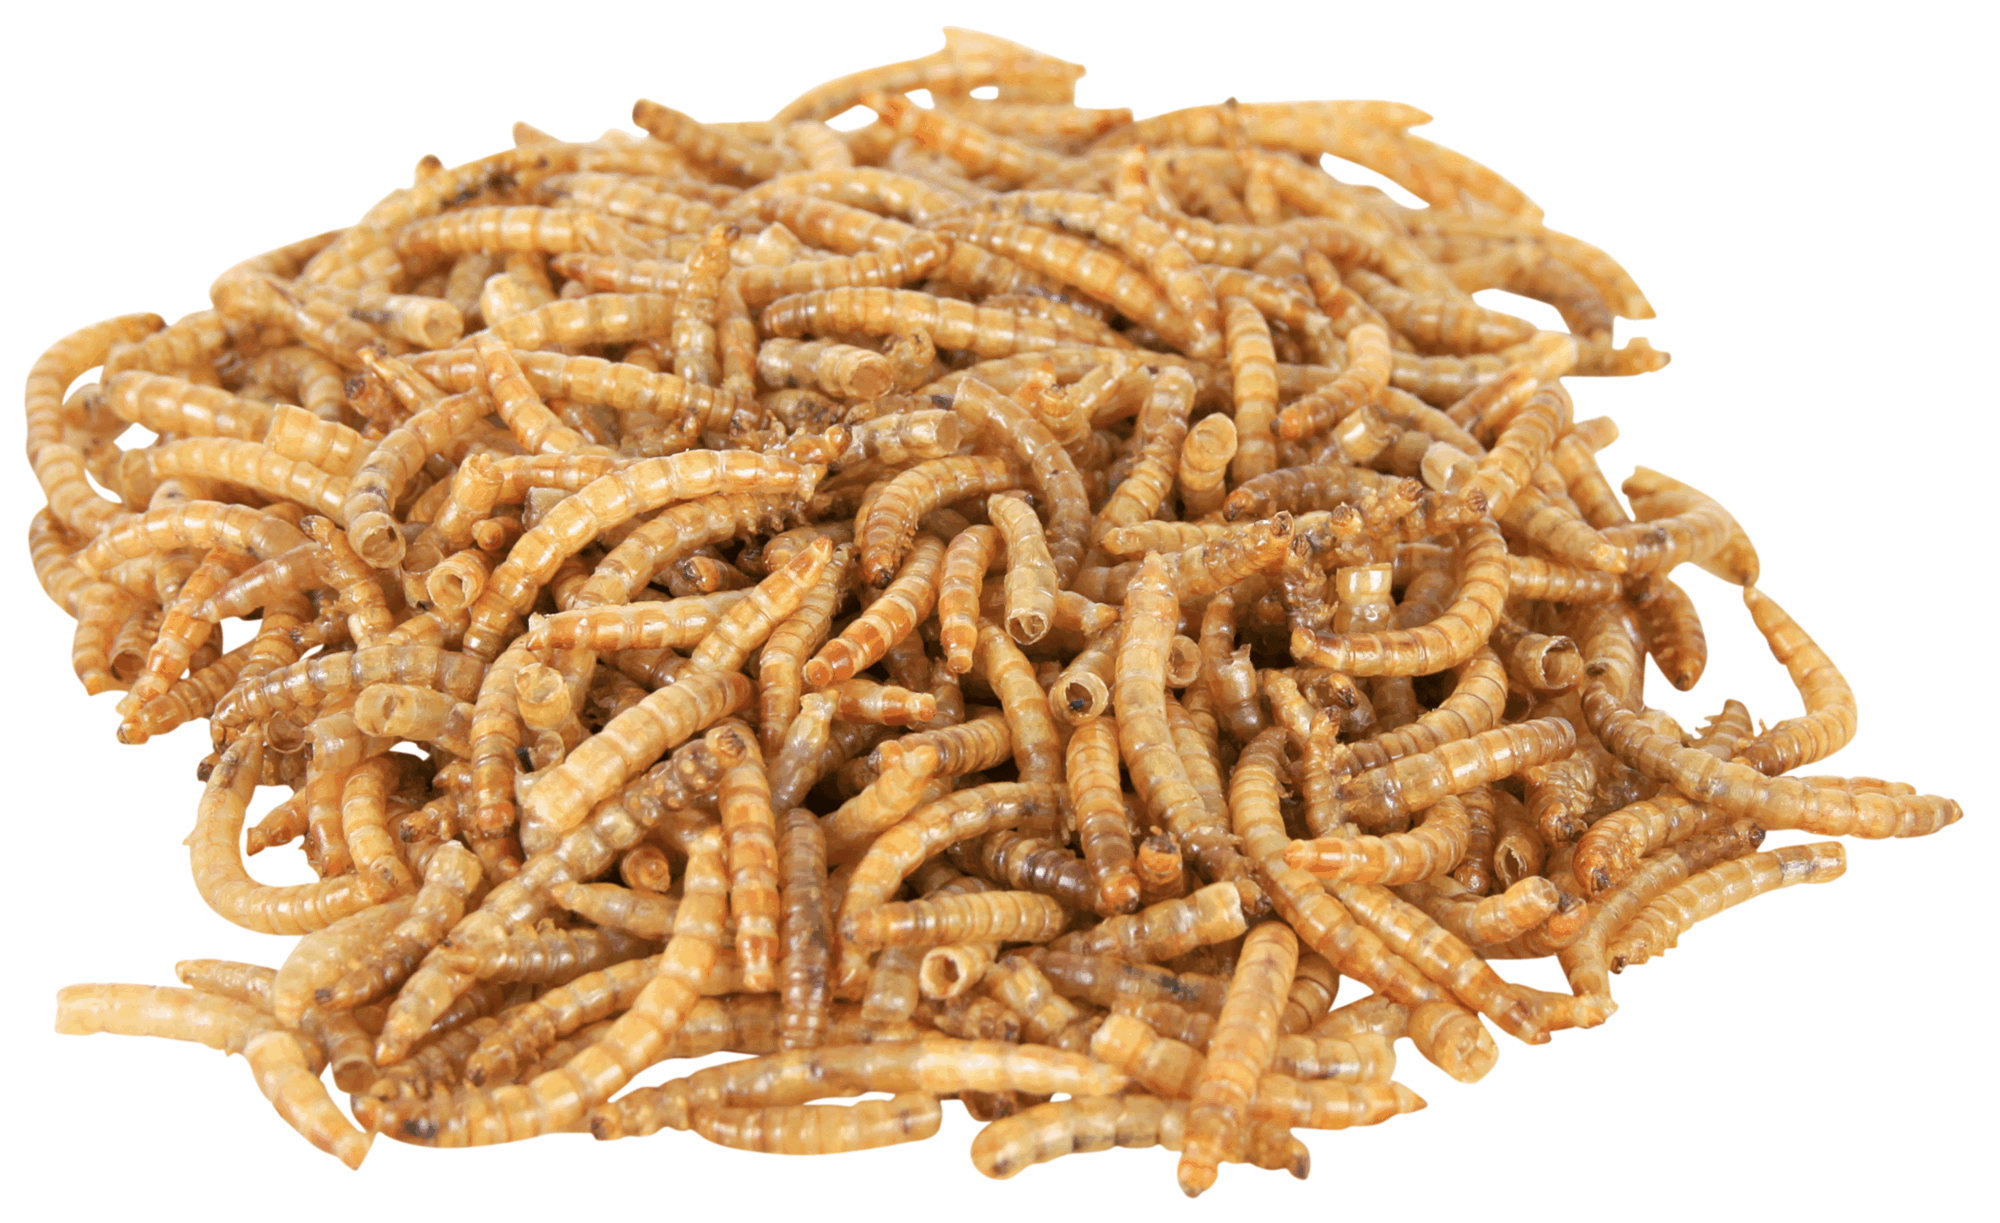 Trixie Reptiland Larvas secas de farinha para répteis